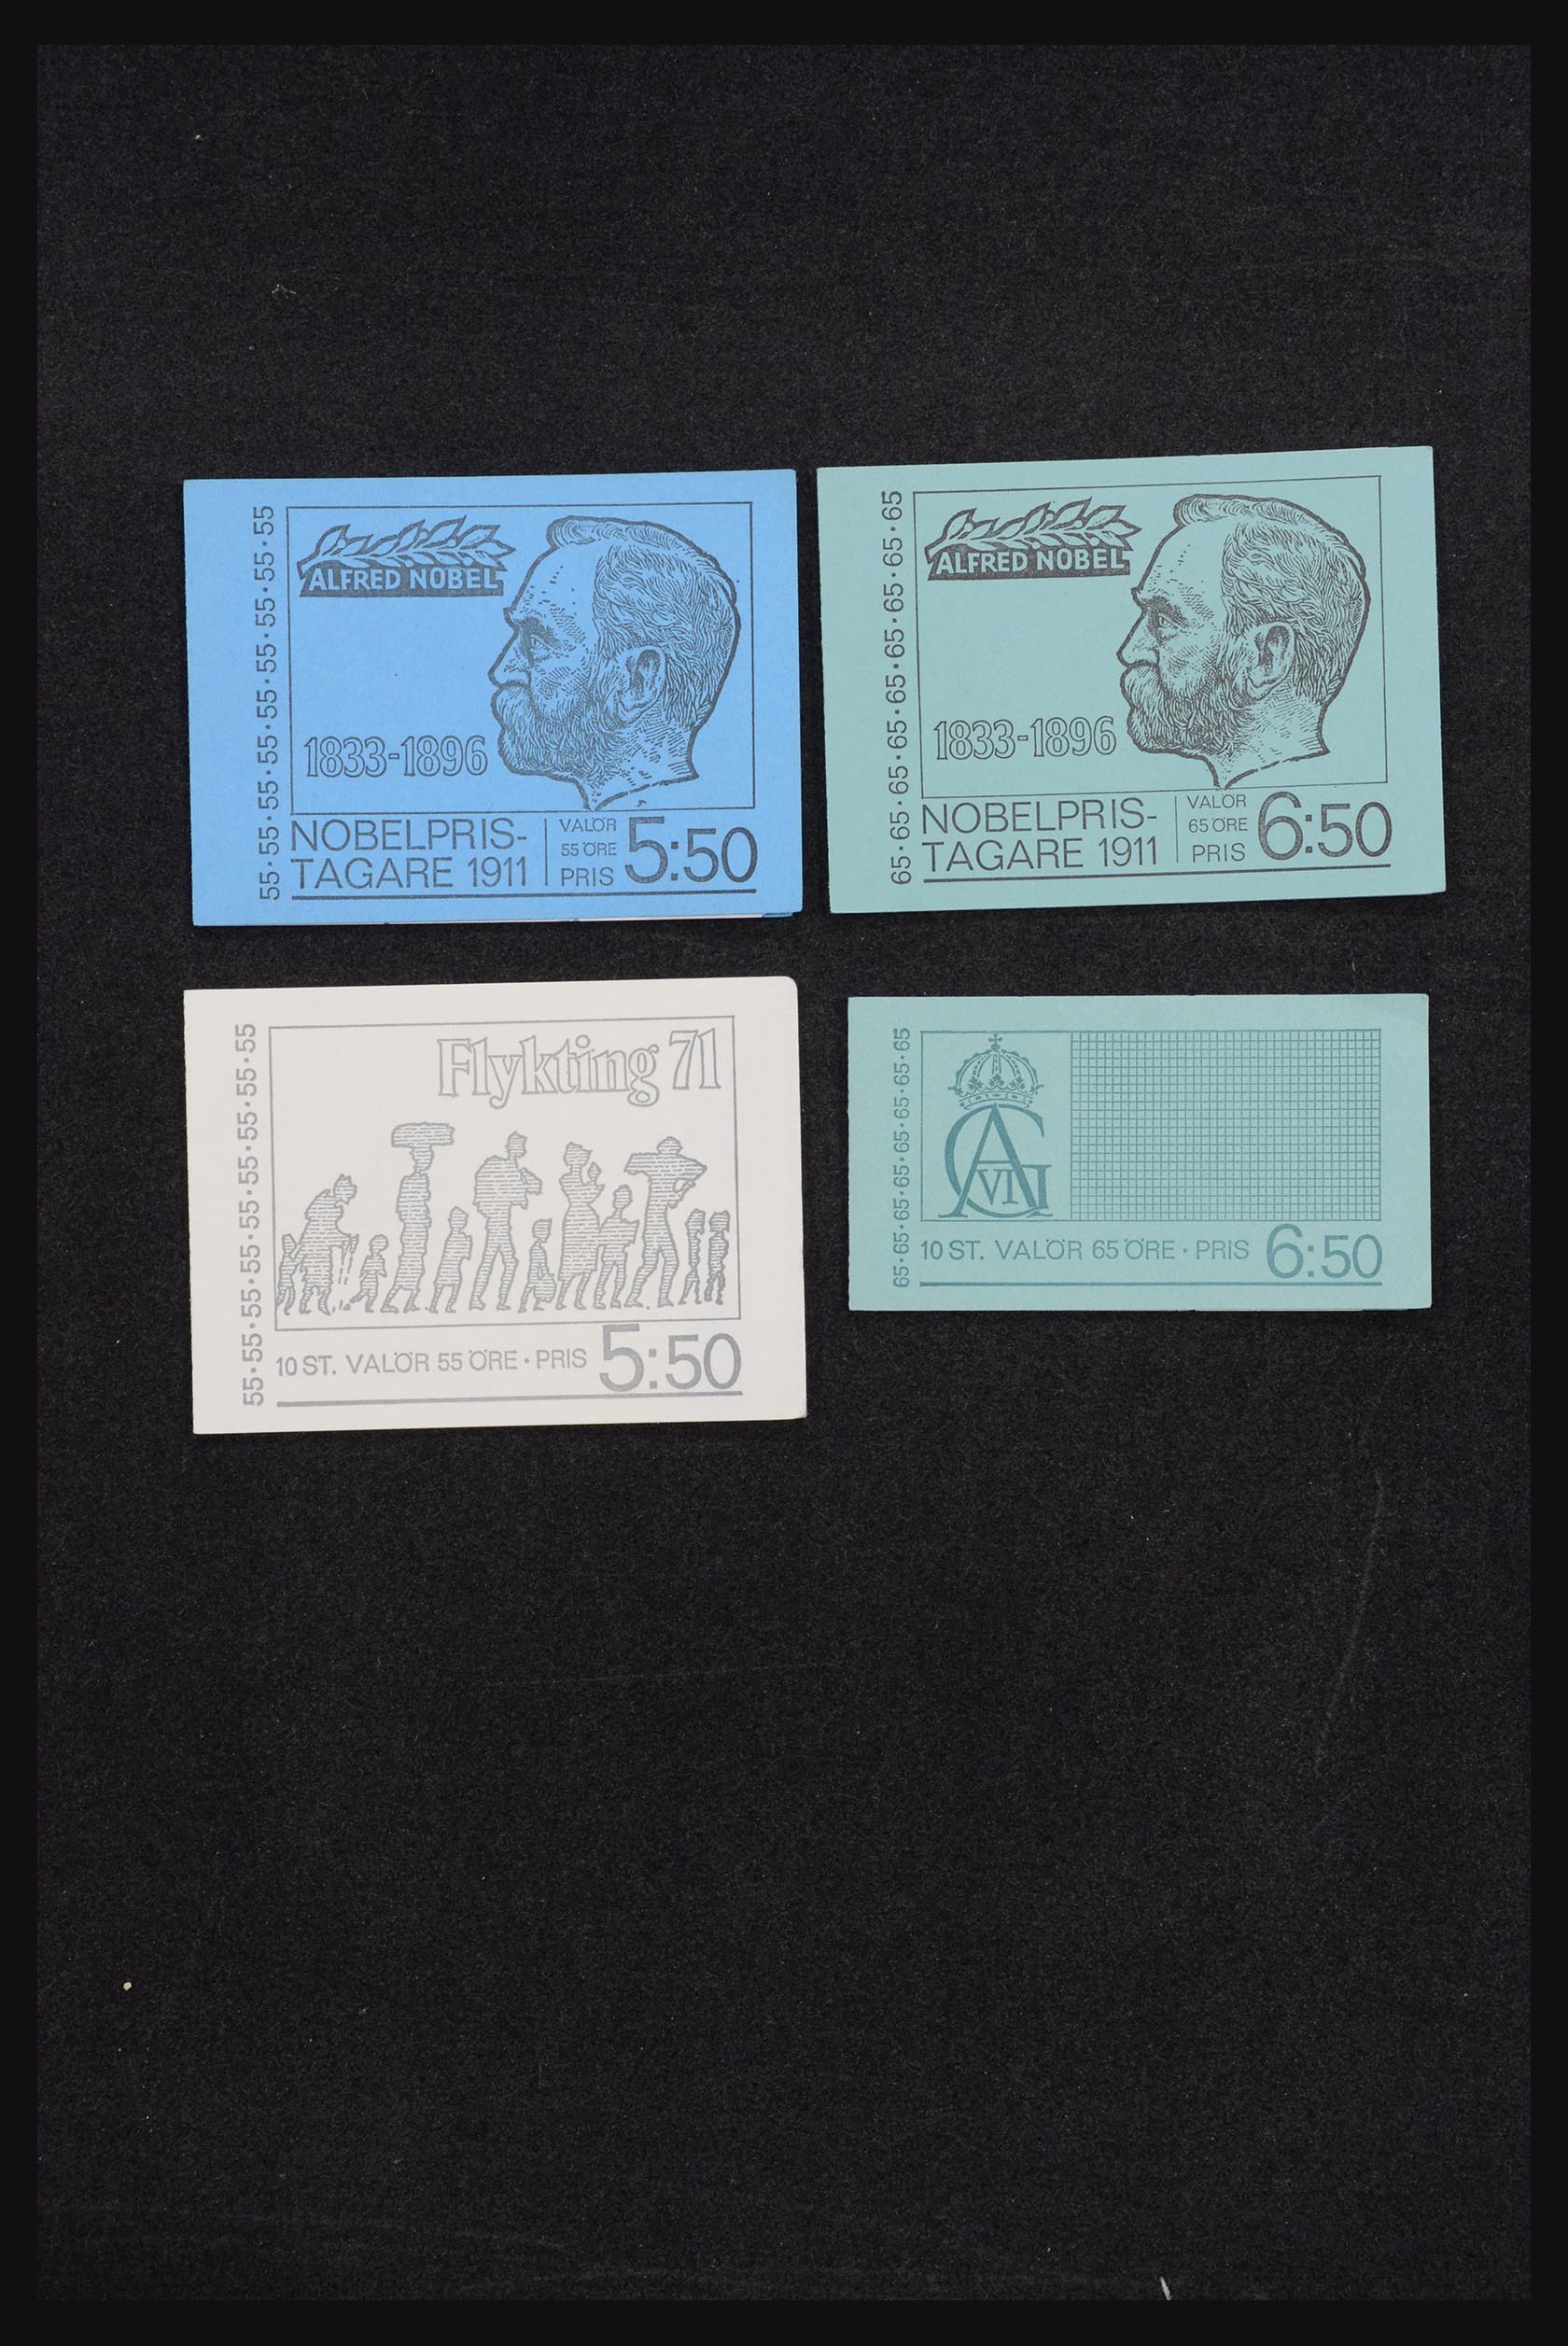 32026 020 - 32026 Sweden stampbooklets 1949-1990.